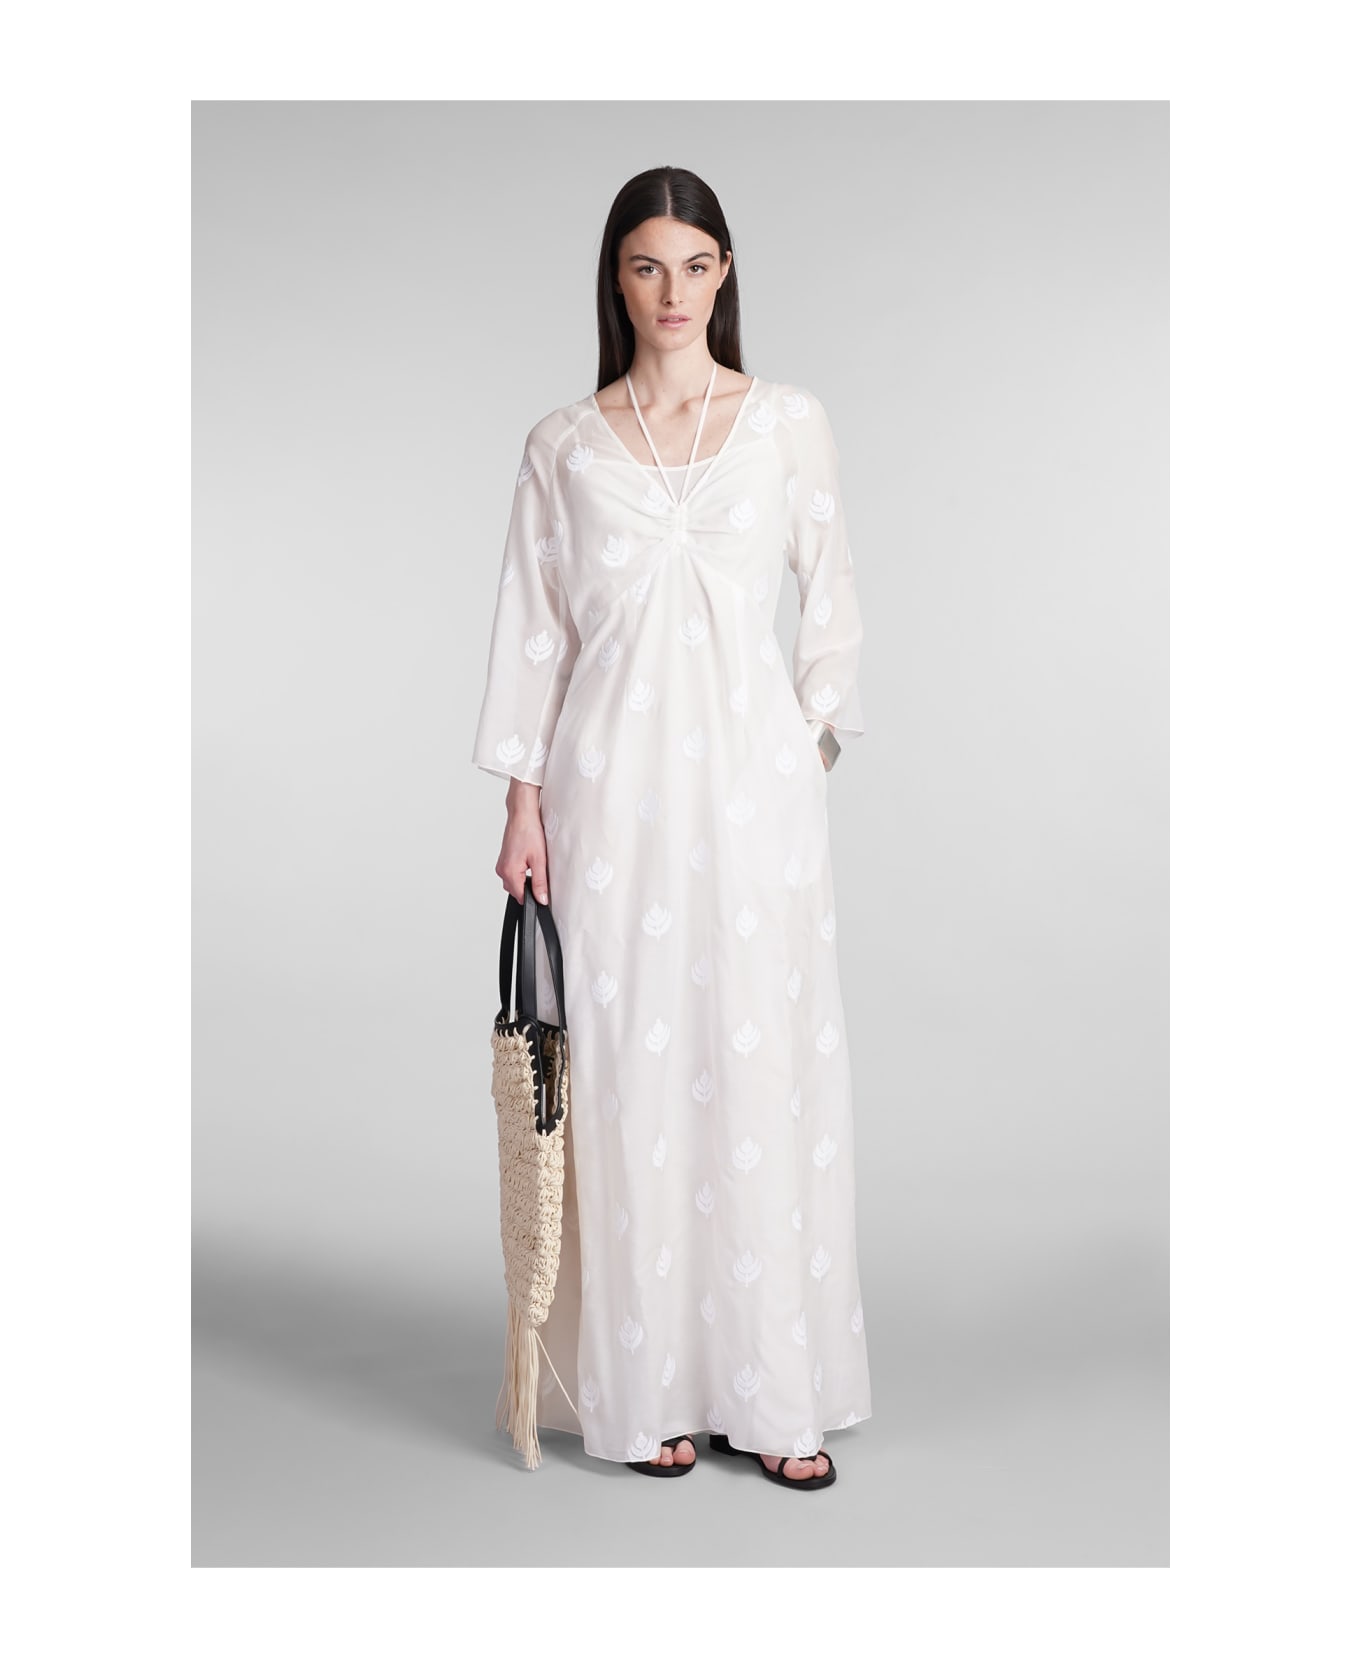 Holy Caftan Aminia Lev Dress In White Cotton - white